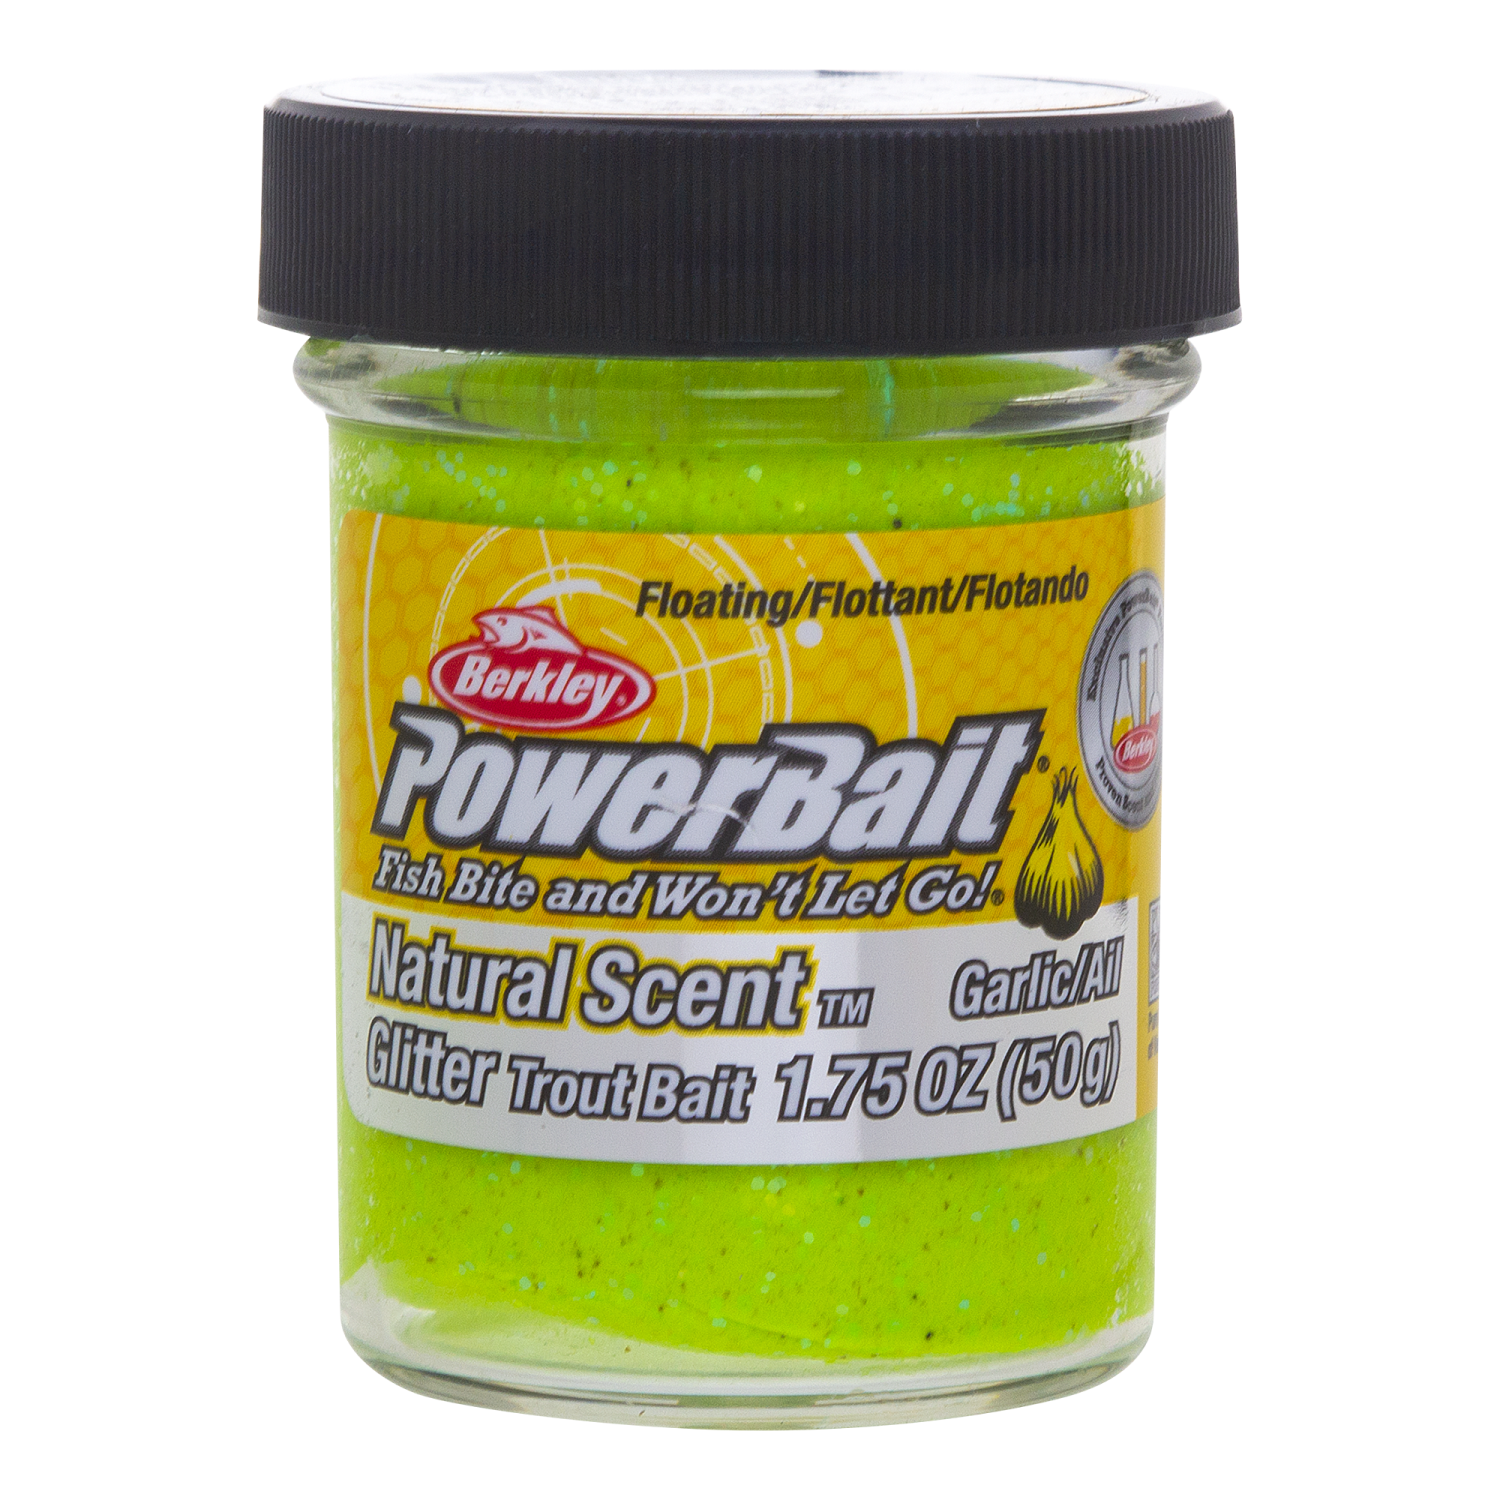 Berkley Powerbait Trout Bait Natural Scent Glitter Garlic (50 g)